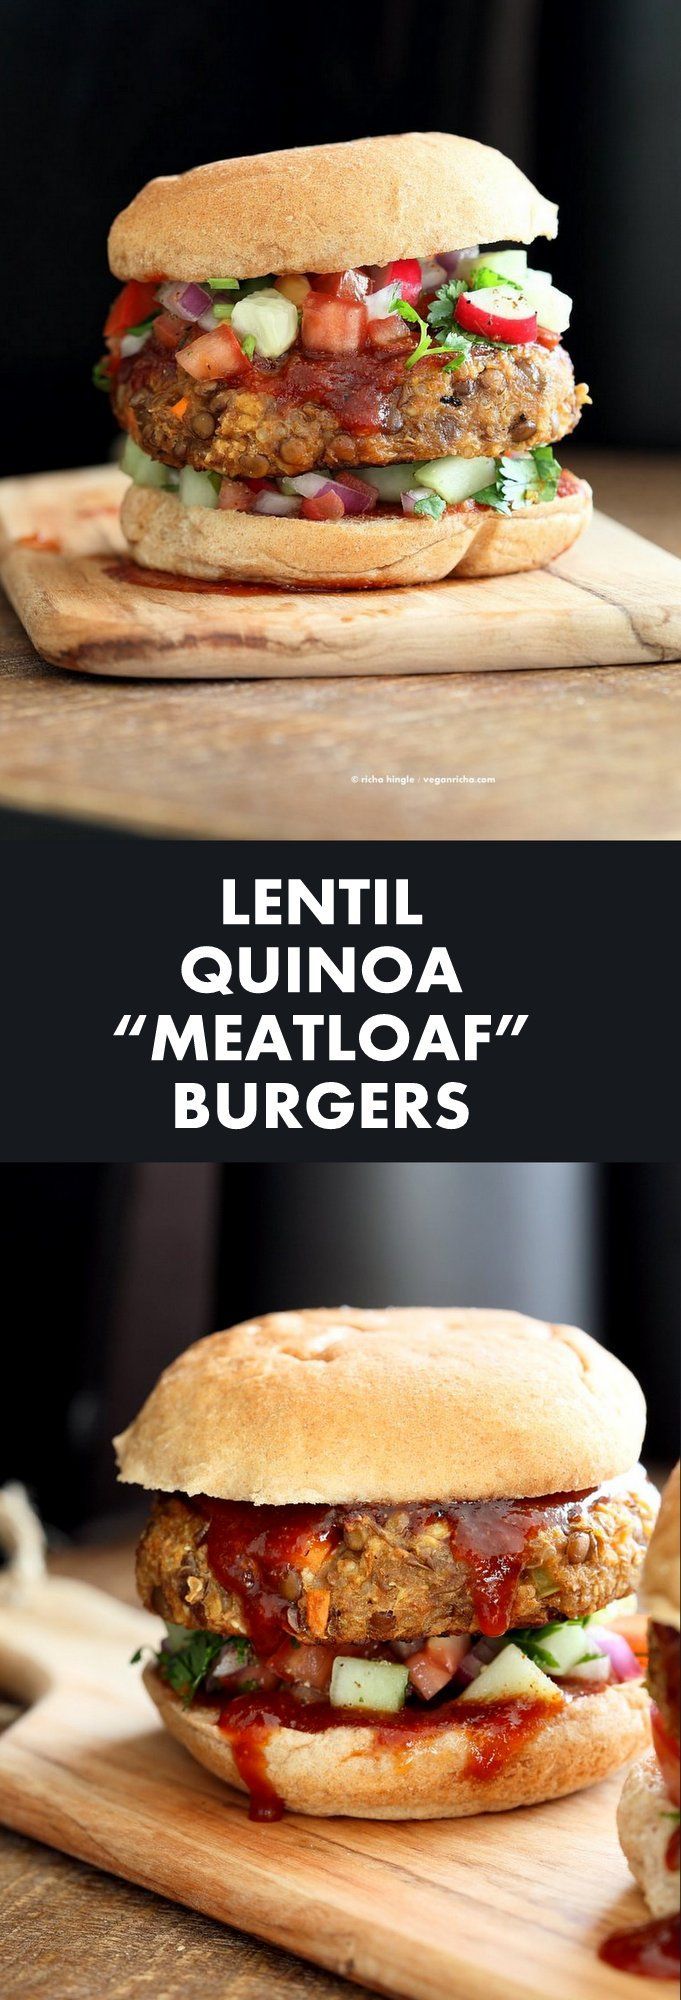 Lentil Quinoa Meatloaf Burgers -   20 quinoa recipes patties
 ideas